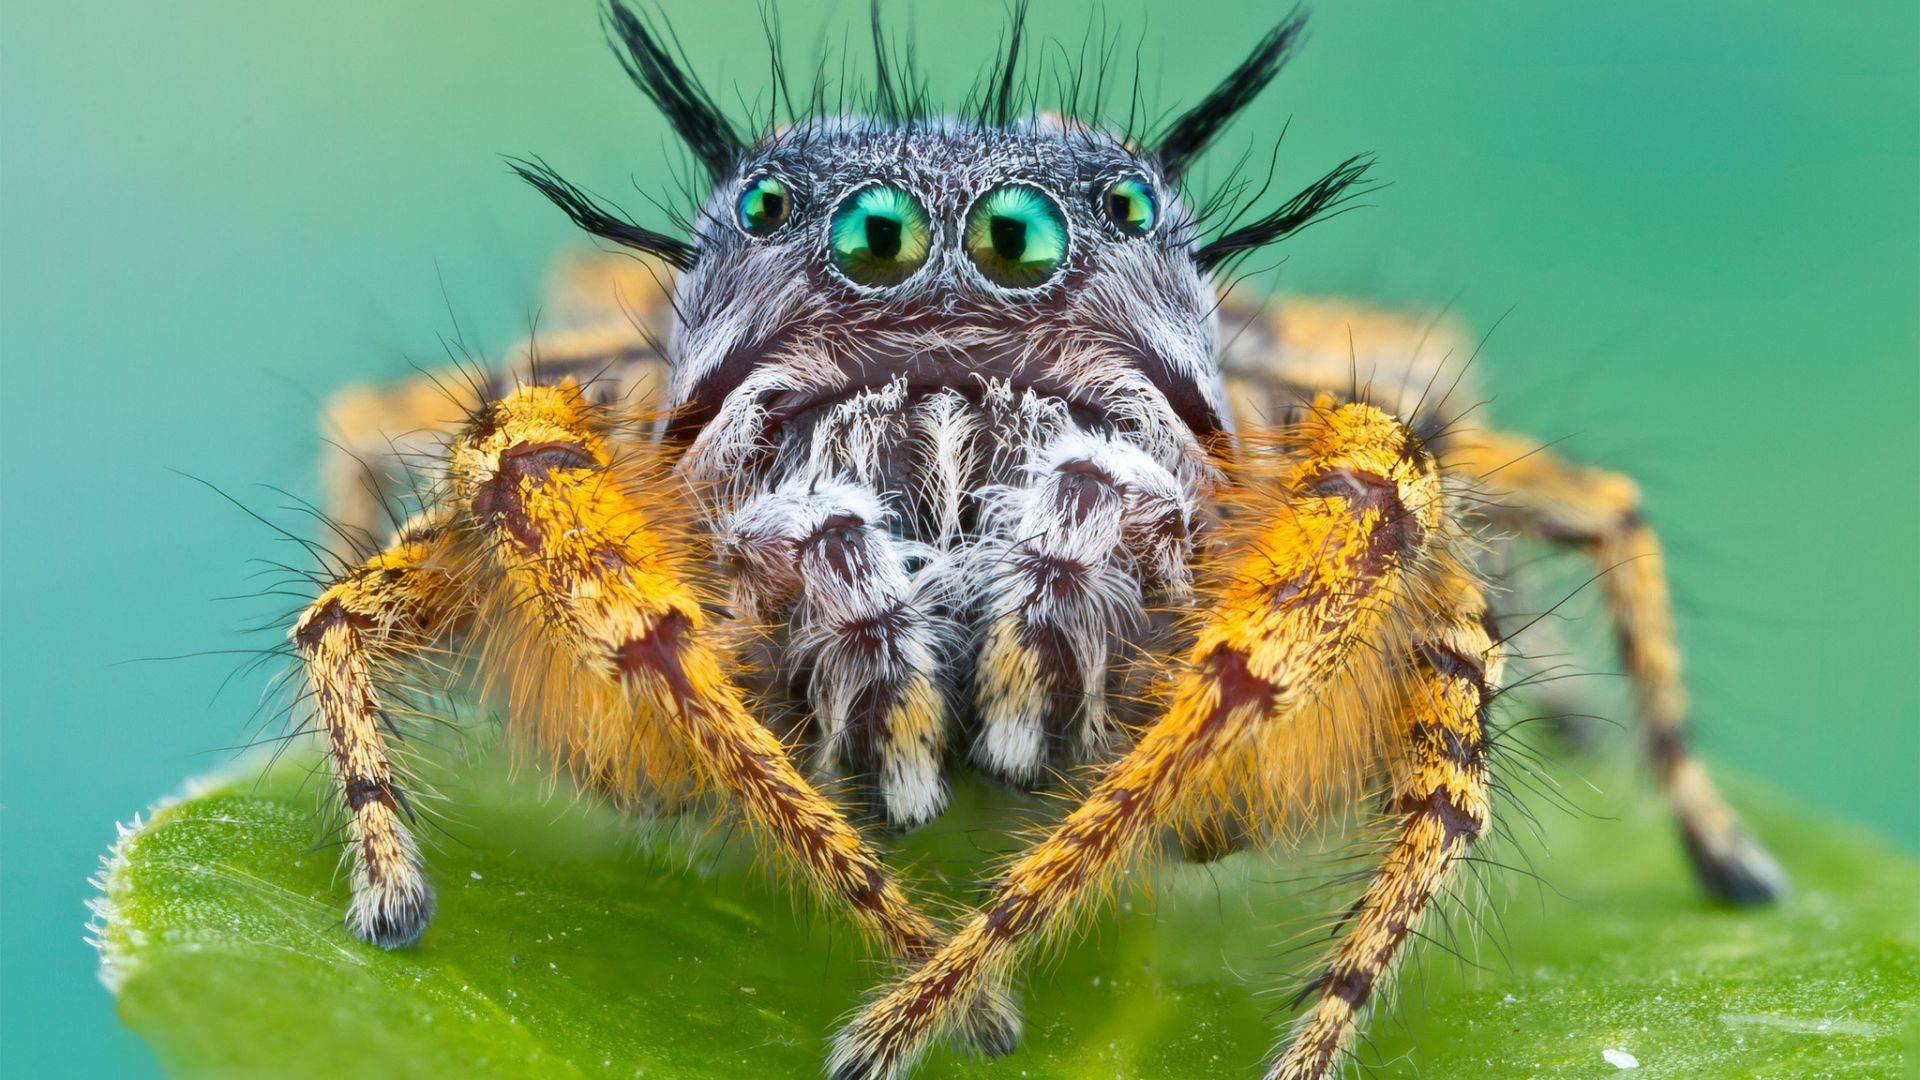 Bagheera kiplingi, spider, macro (horizontal)